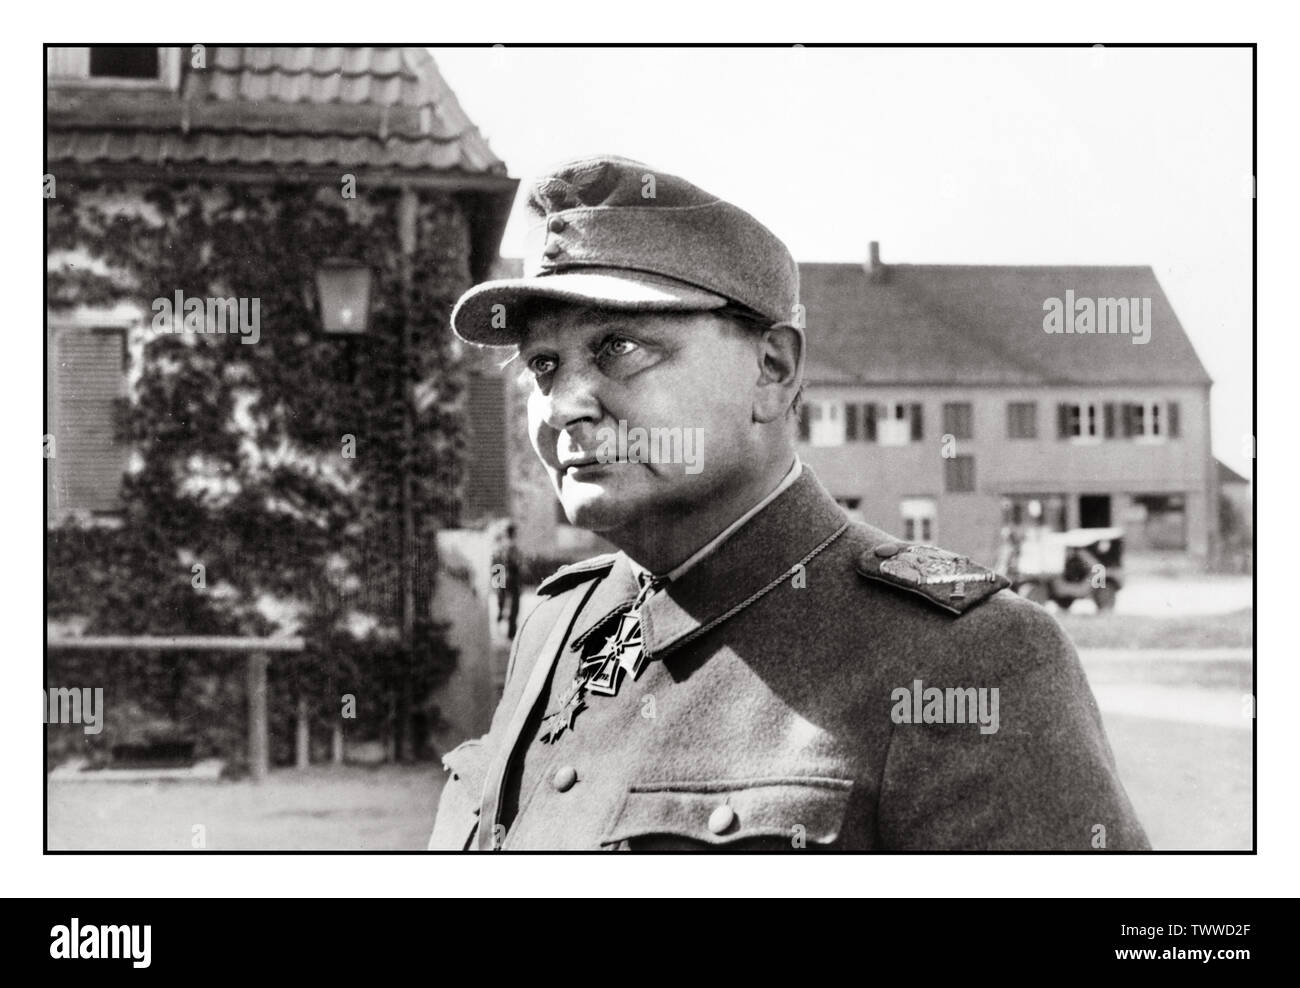 HERMANN GÖRING CAPTURE 1945 Vintage WW2 Bild eines gefangenen Top-Nazi Hermann Göring, auf einer Straße in Österreich von einer speziellen US-Division gefangen genommen, (Jeep im Hintergrund), die hinter feindlichen Linien nach Hitlers Selbstmord 1945 Zweiten Weltkrieg geschickt worden war Stockfoto